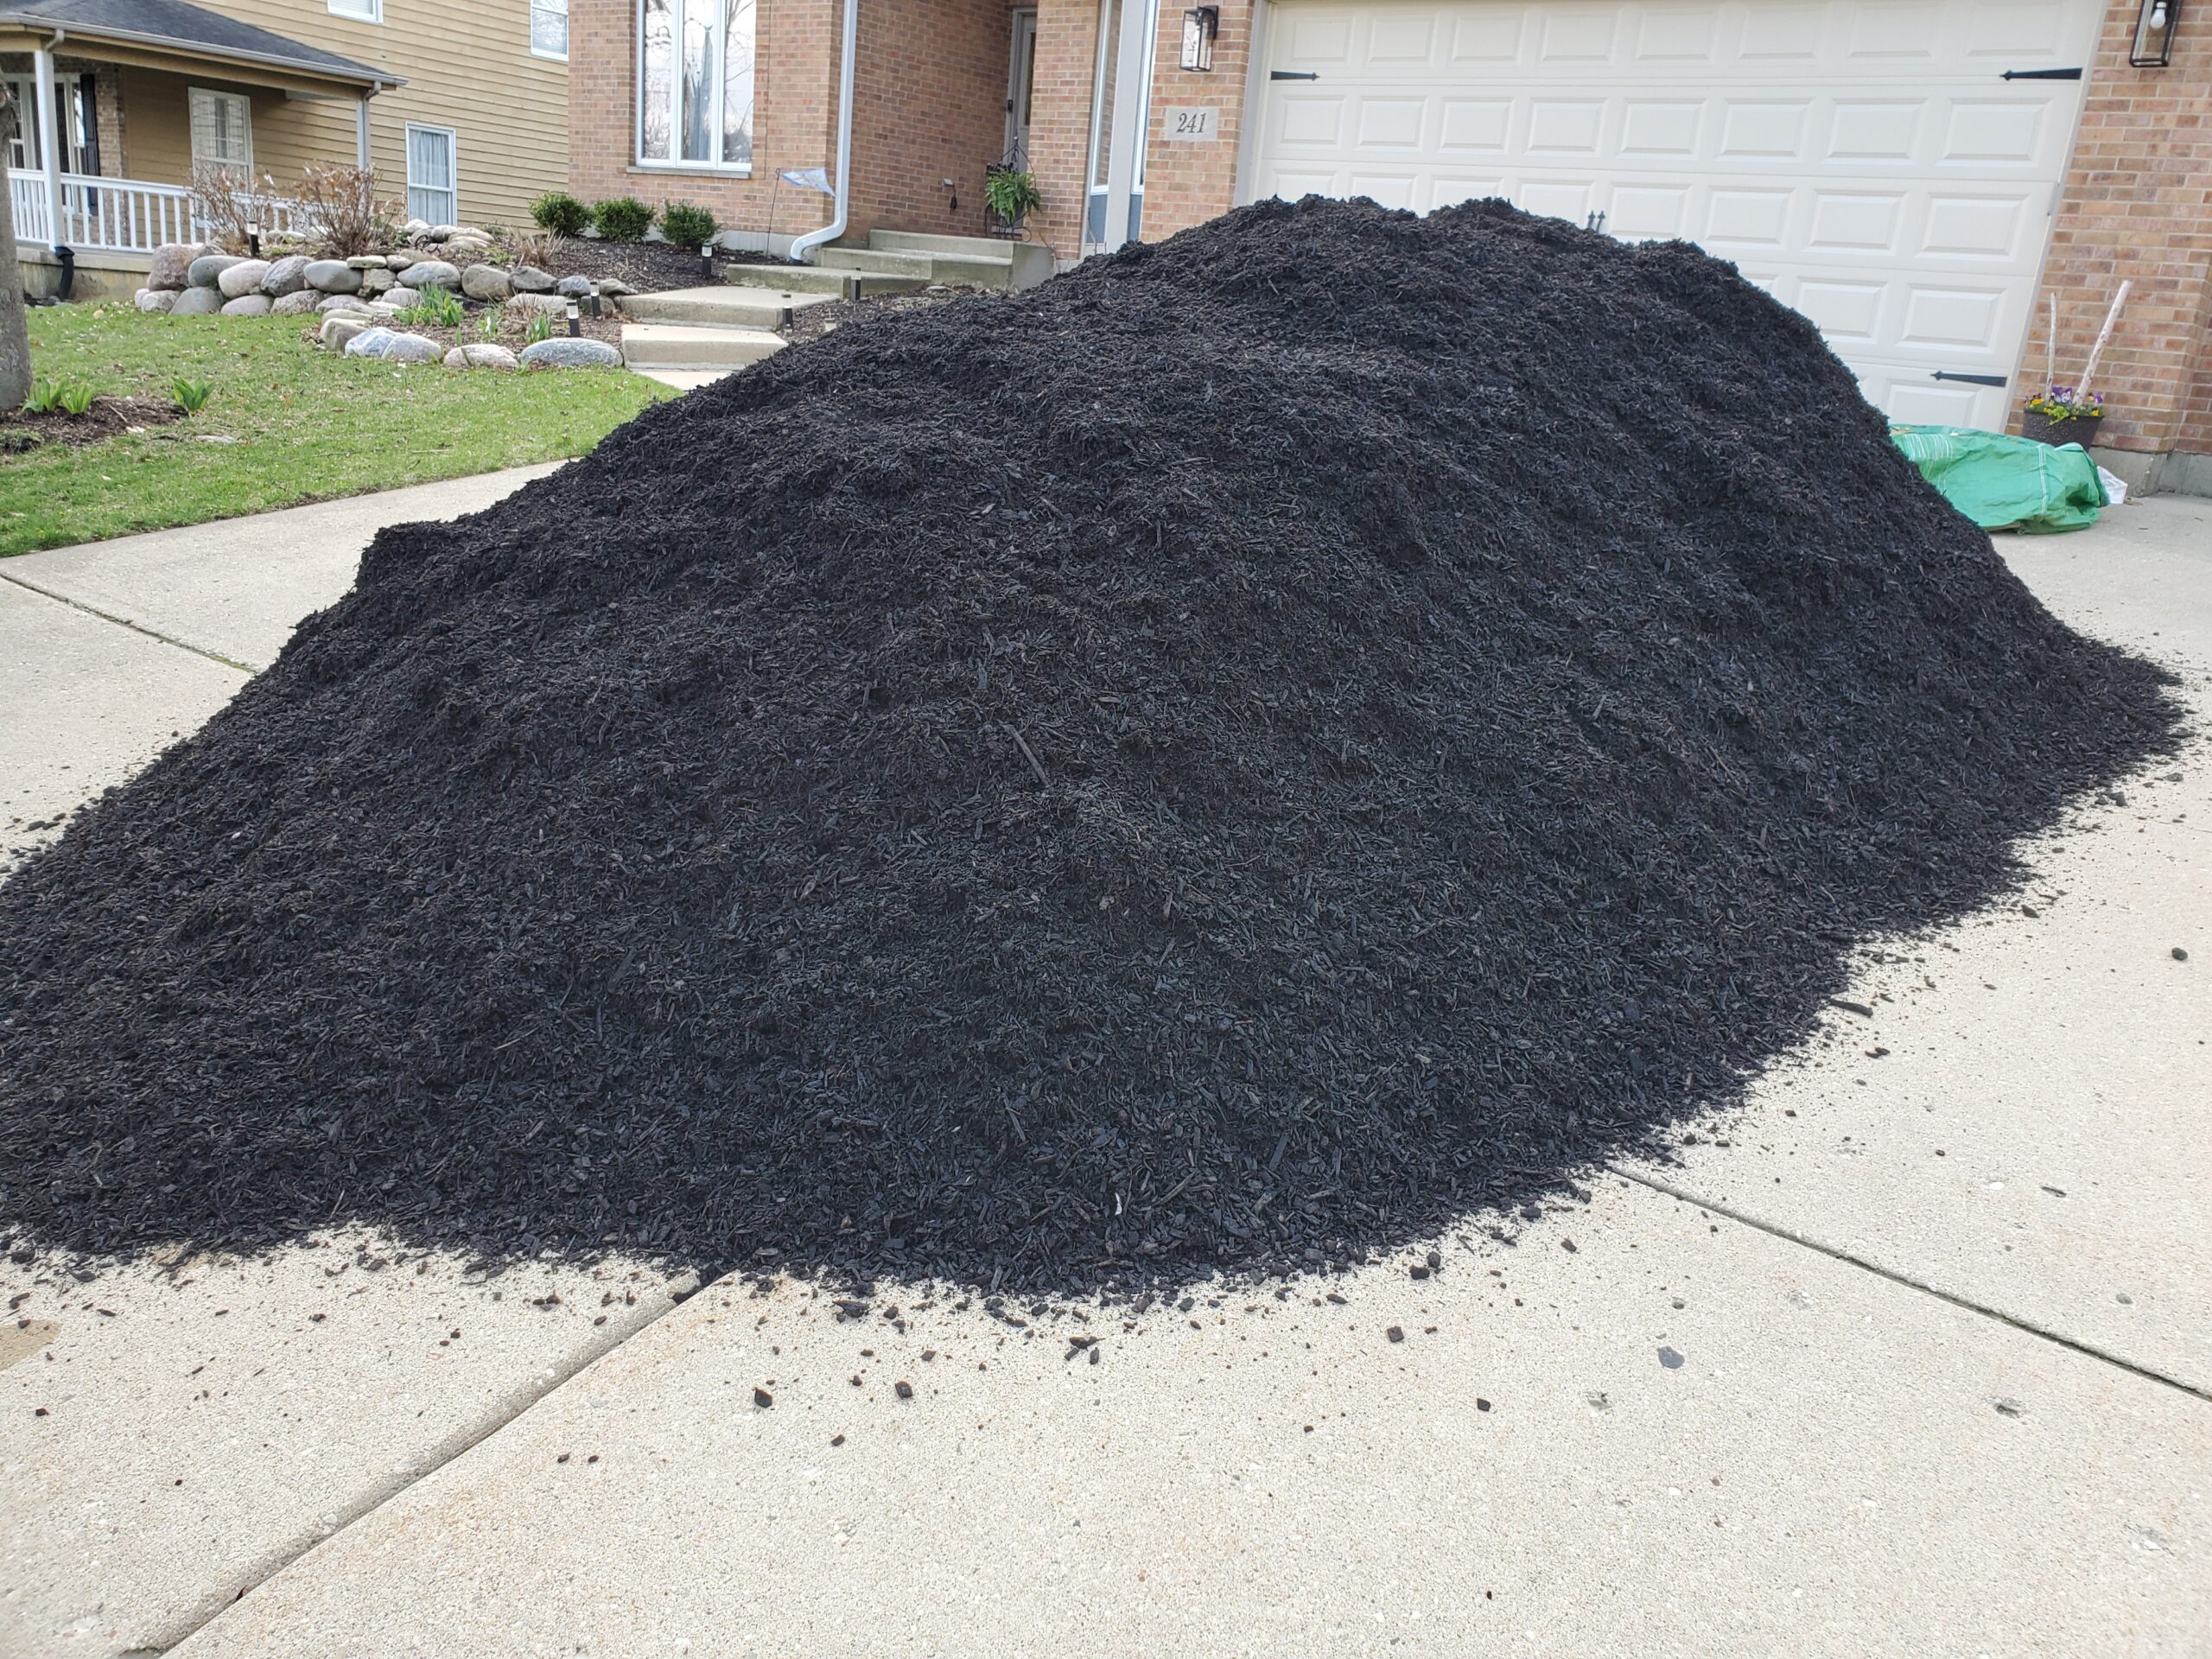 Image of Black mulch in a bulk bin